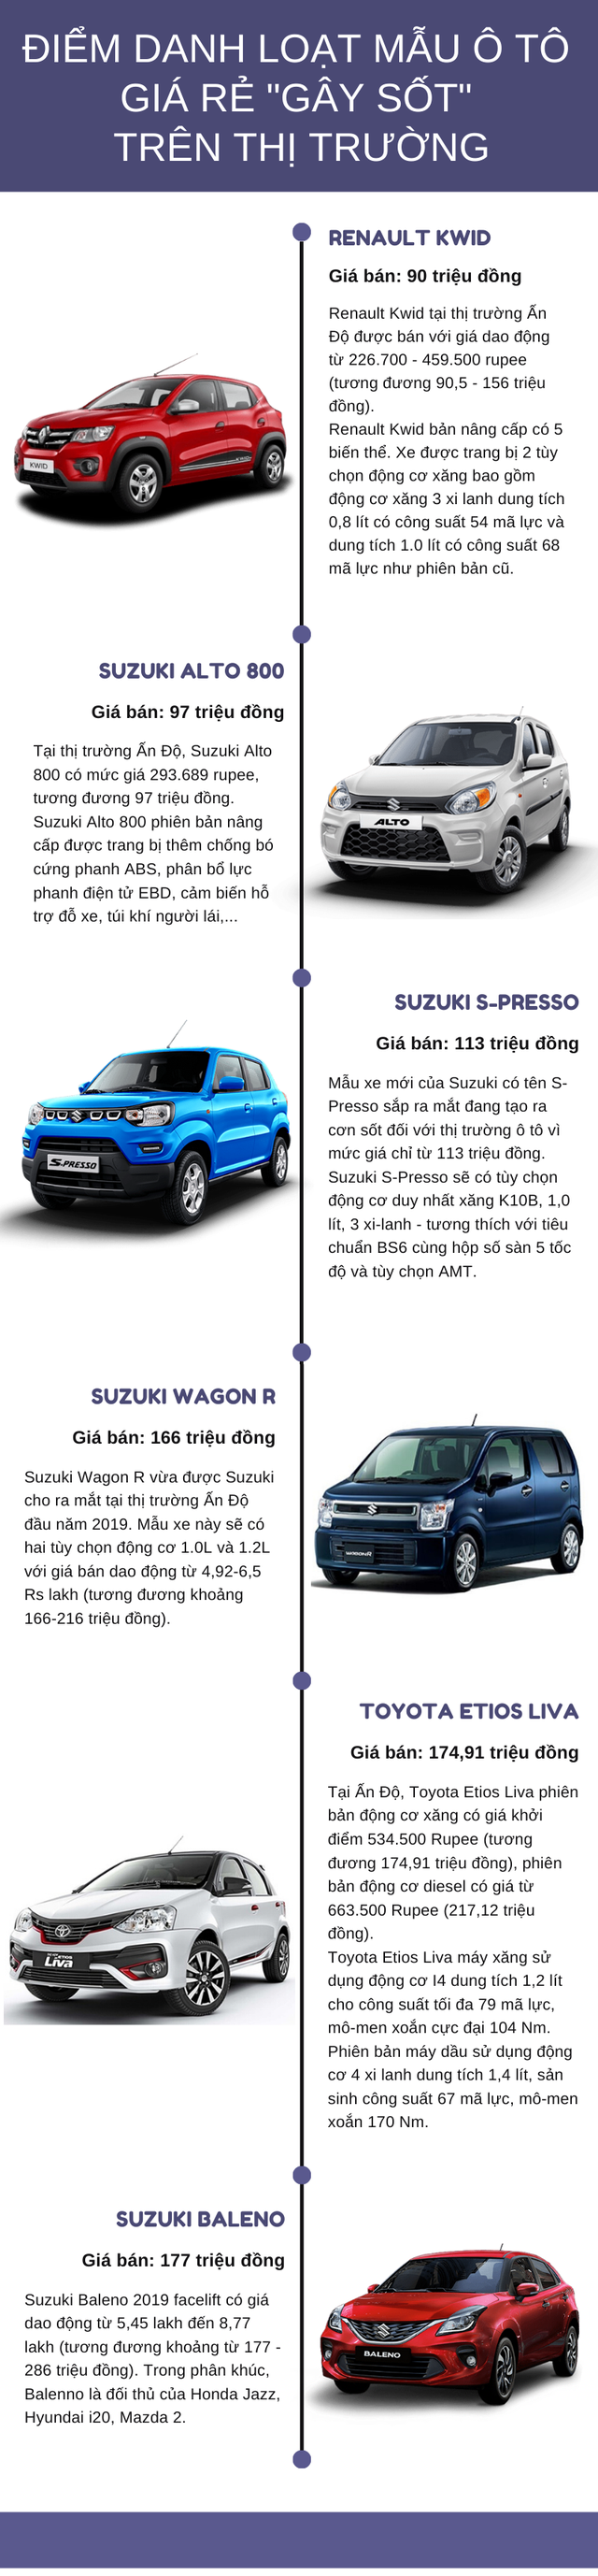 Loạt ô tô giá siêu rẻ chỉ từ 90 triệu đồng không thể bỏ qua, phần lớn đến từ Suzuki - Ảnh 1.